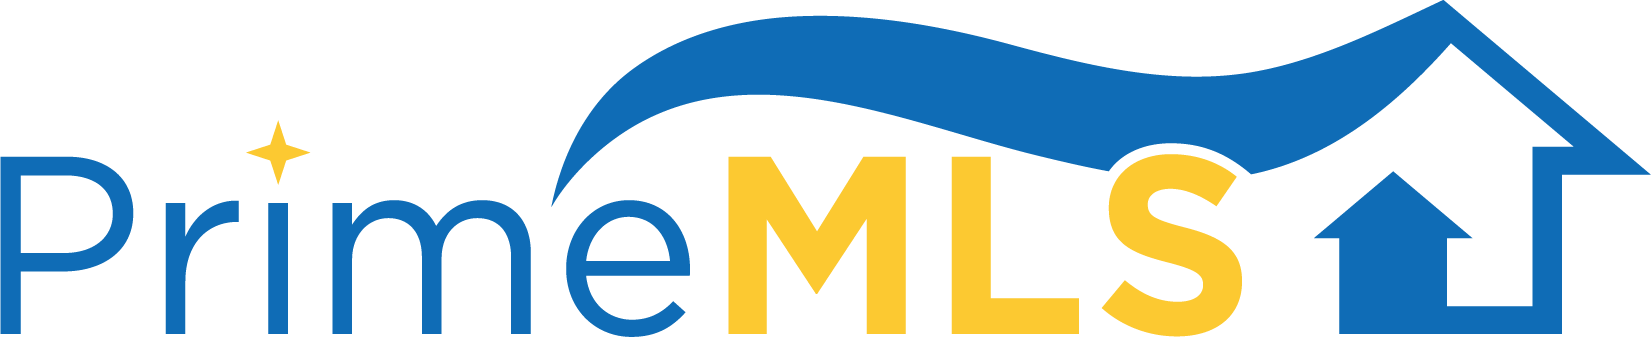 Prime MLS Logo